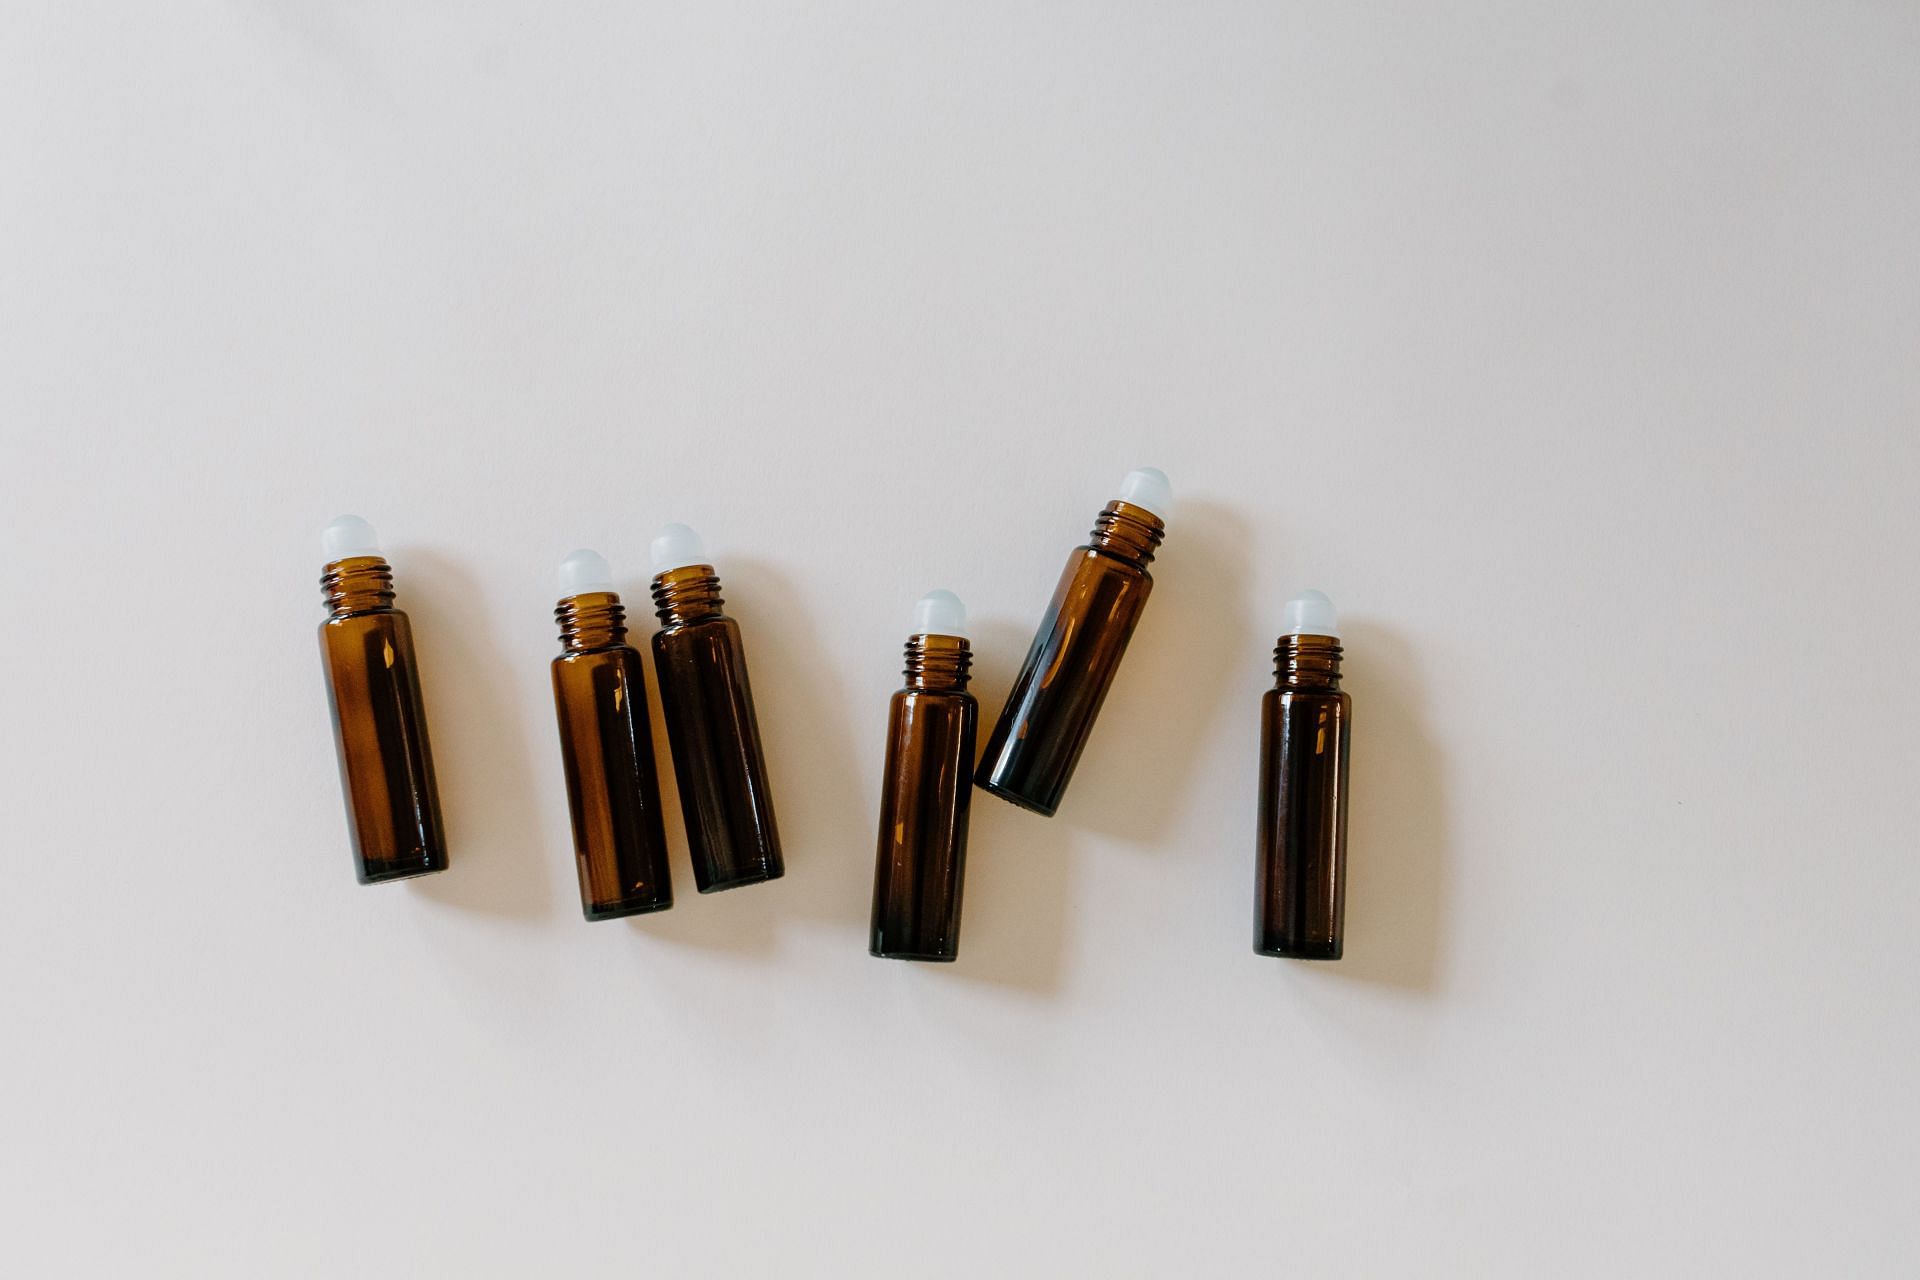 Different types of tea tree oil for skin (Image via Pexels / Tara Winstead)